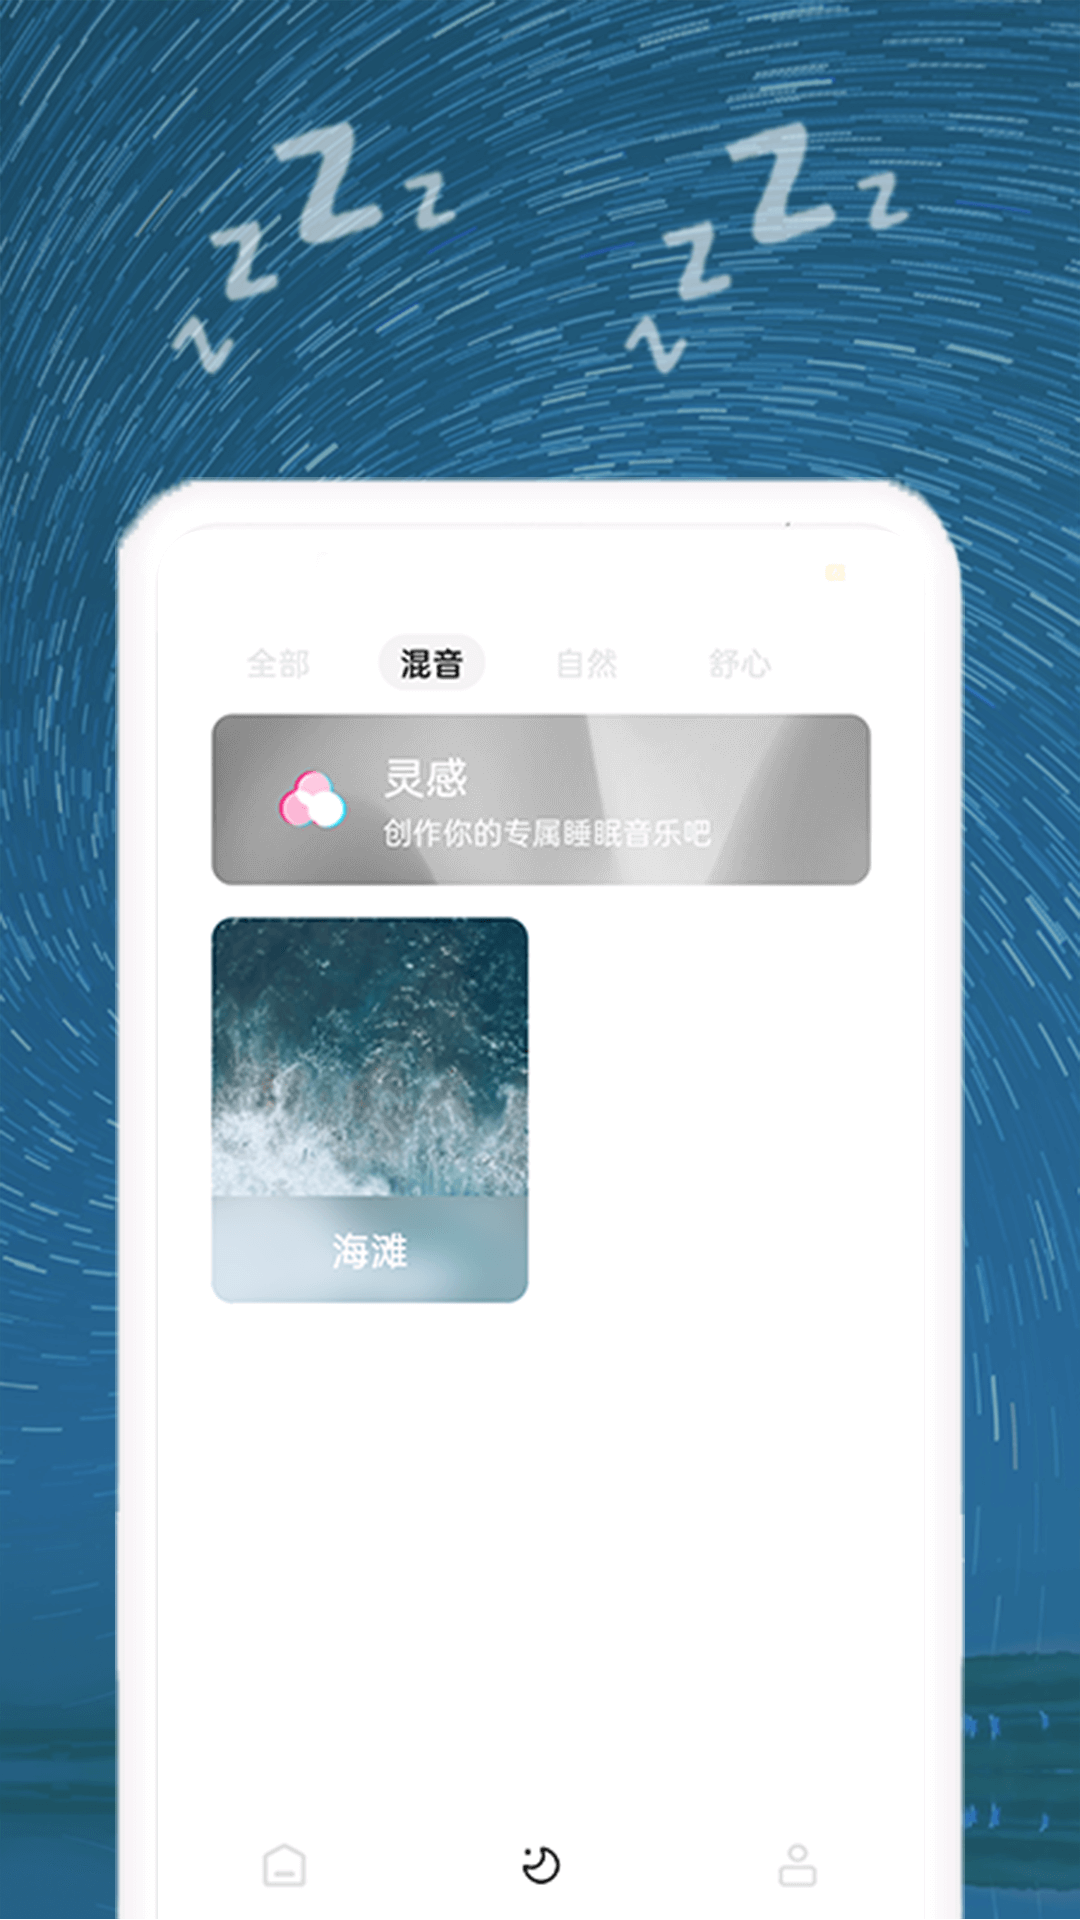 正念睡眠音乐v1.0.5 最新版(正念睡眠)_正念睡眠app下载